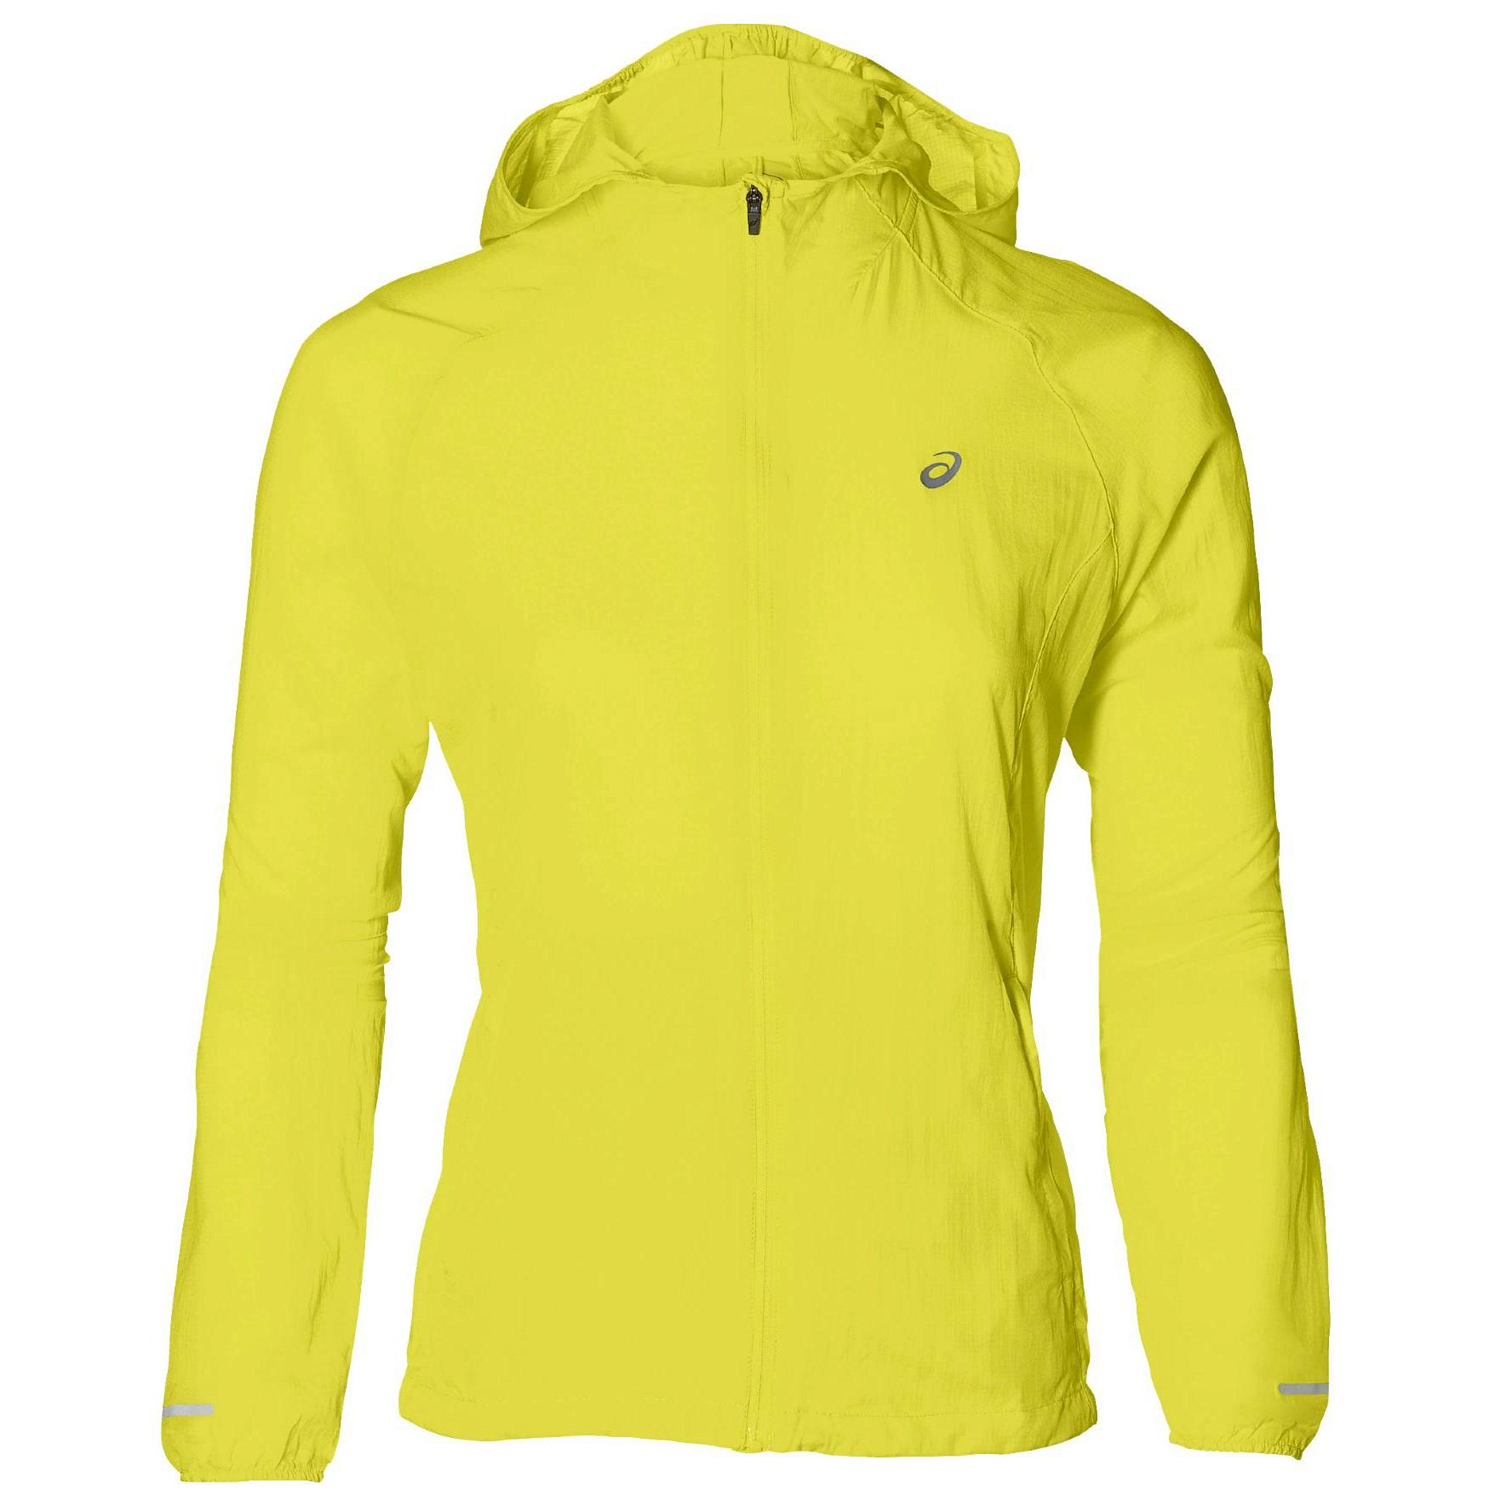 Куртка беговая Asics 2019 Packable Jacket Lemon spark